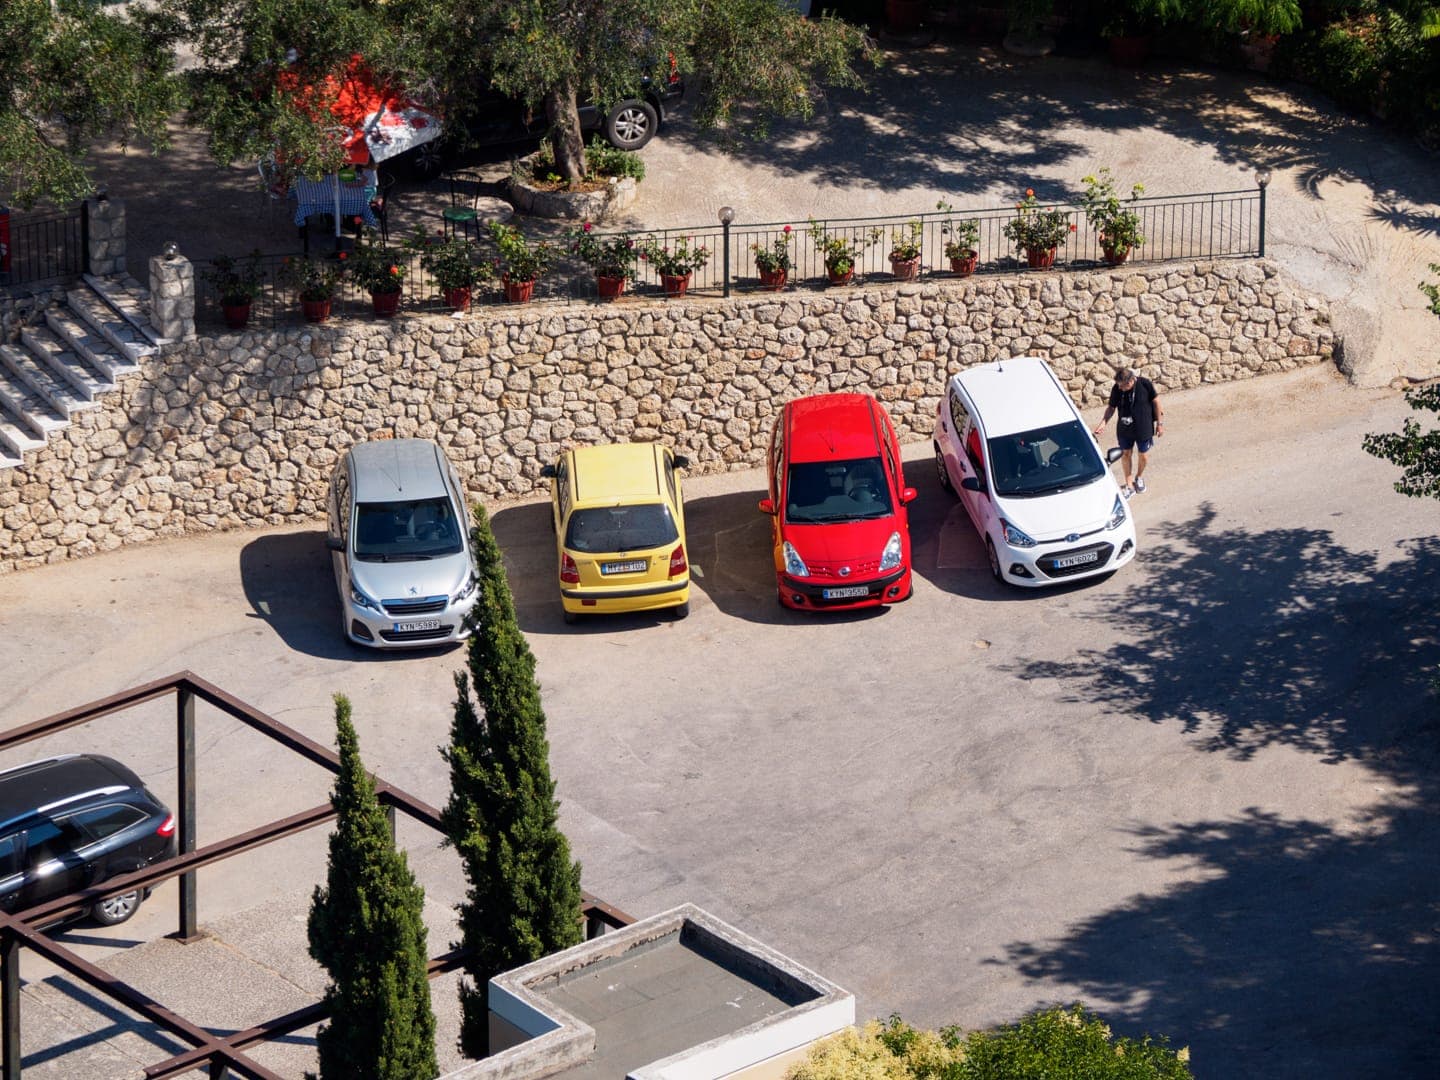 Większość nowych i zadbanych samochodów na Korfu pochodzi z wypożyczalni. Jest to bardzo dobre rozwiązanie aby dojechać tam, gdzie nie dociera np. Green Bus Corfu